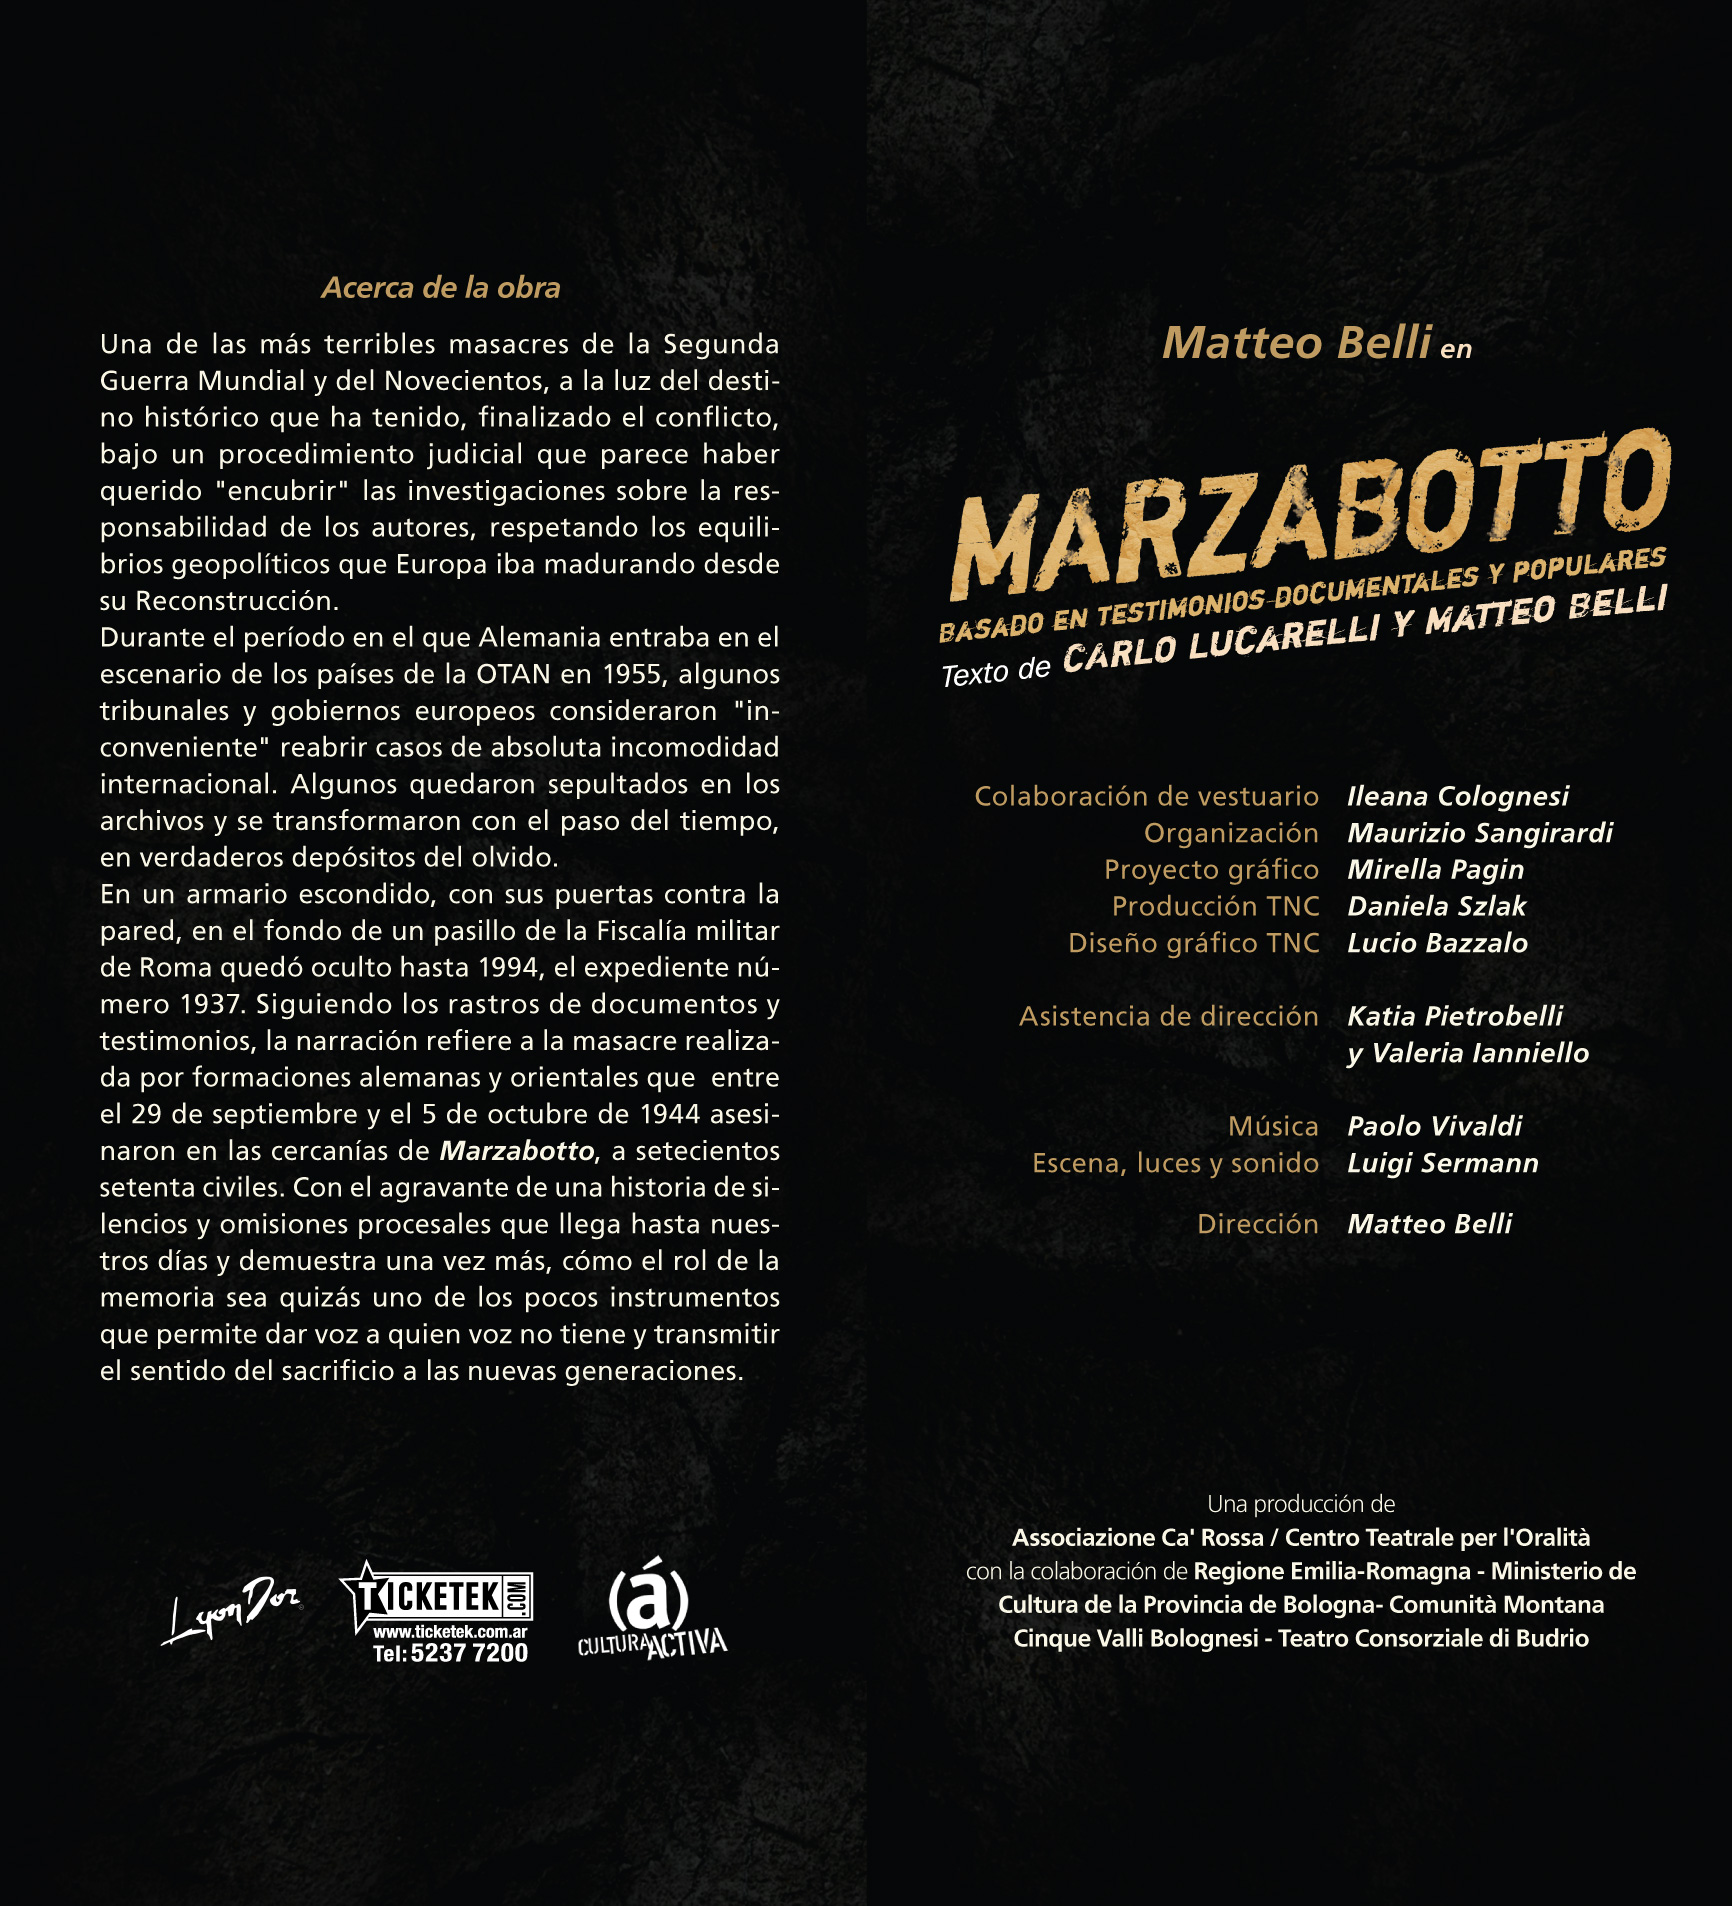 2010 Marzabotto - Programa DORSO